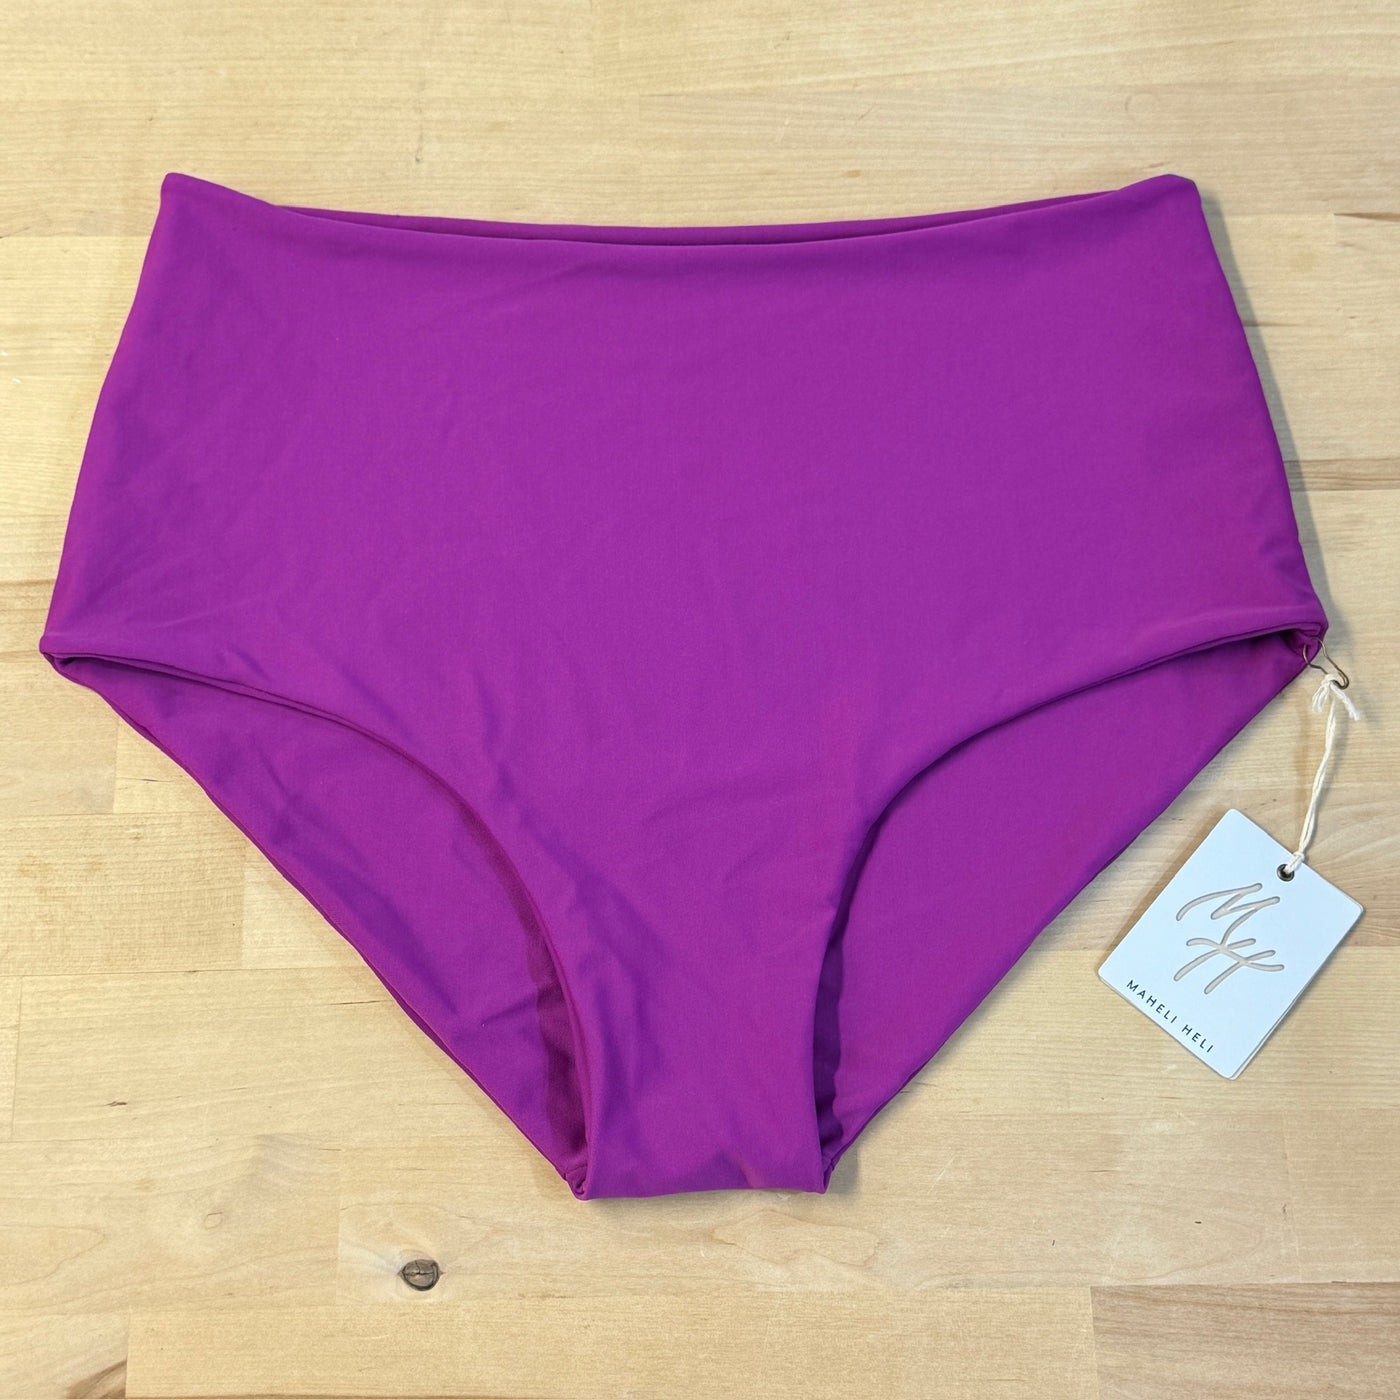 HIGH TIDE Bikini Bottom in Violet